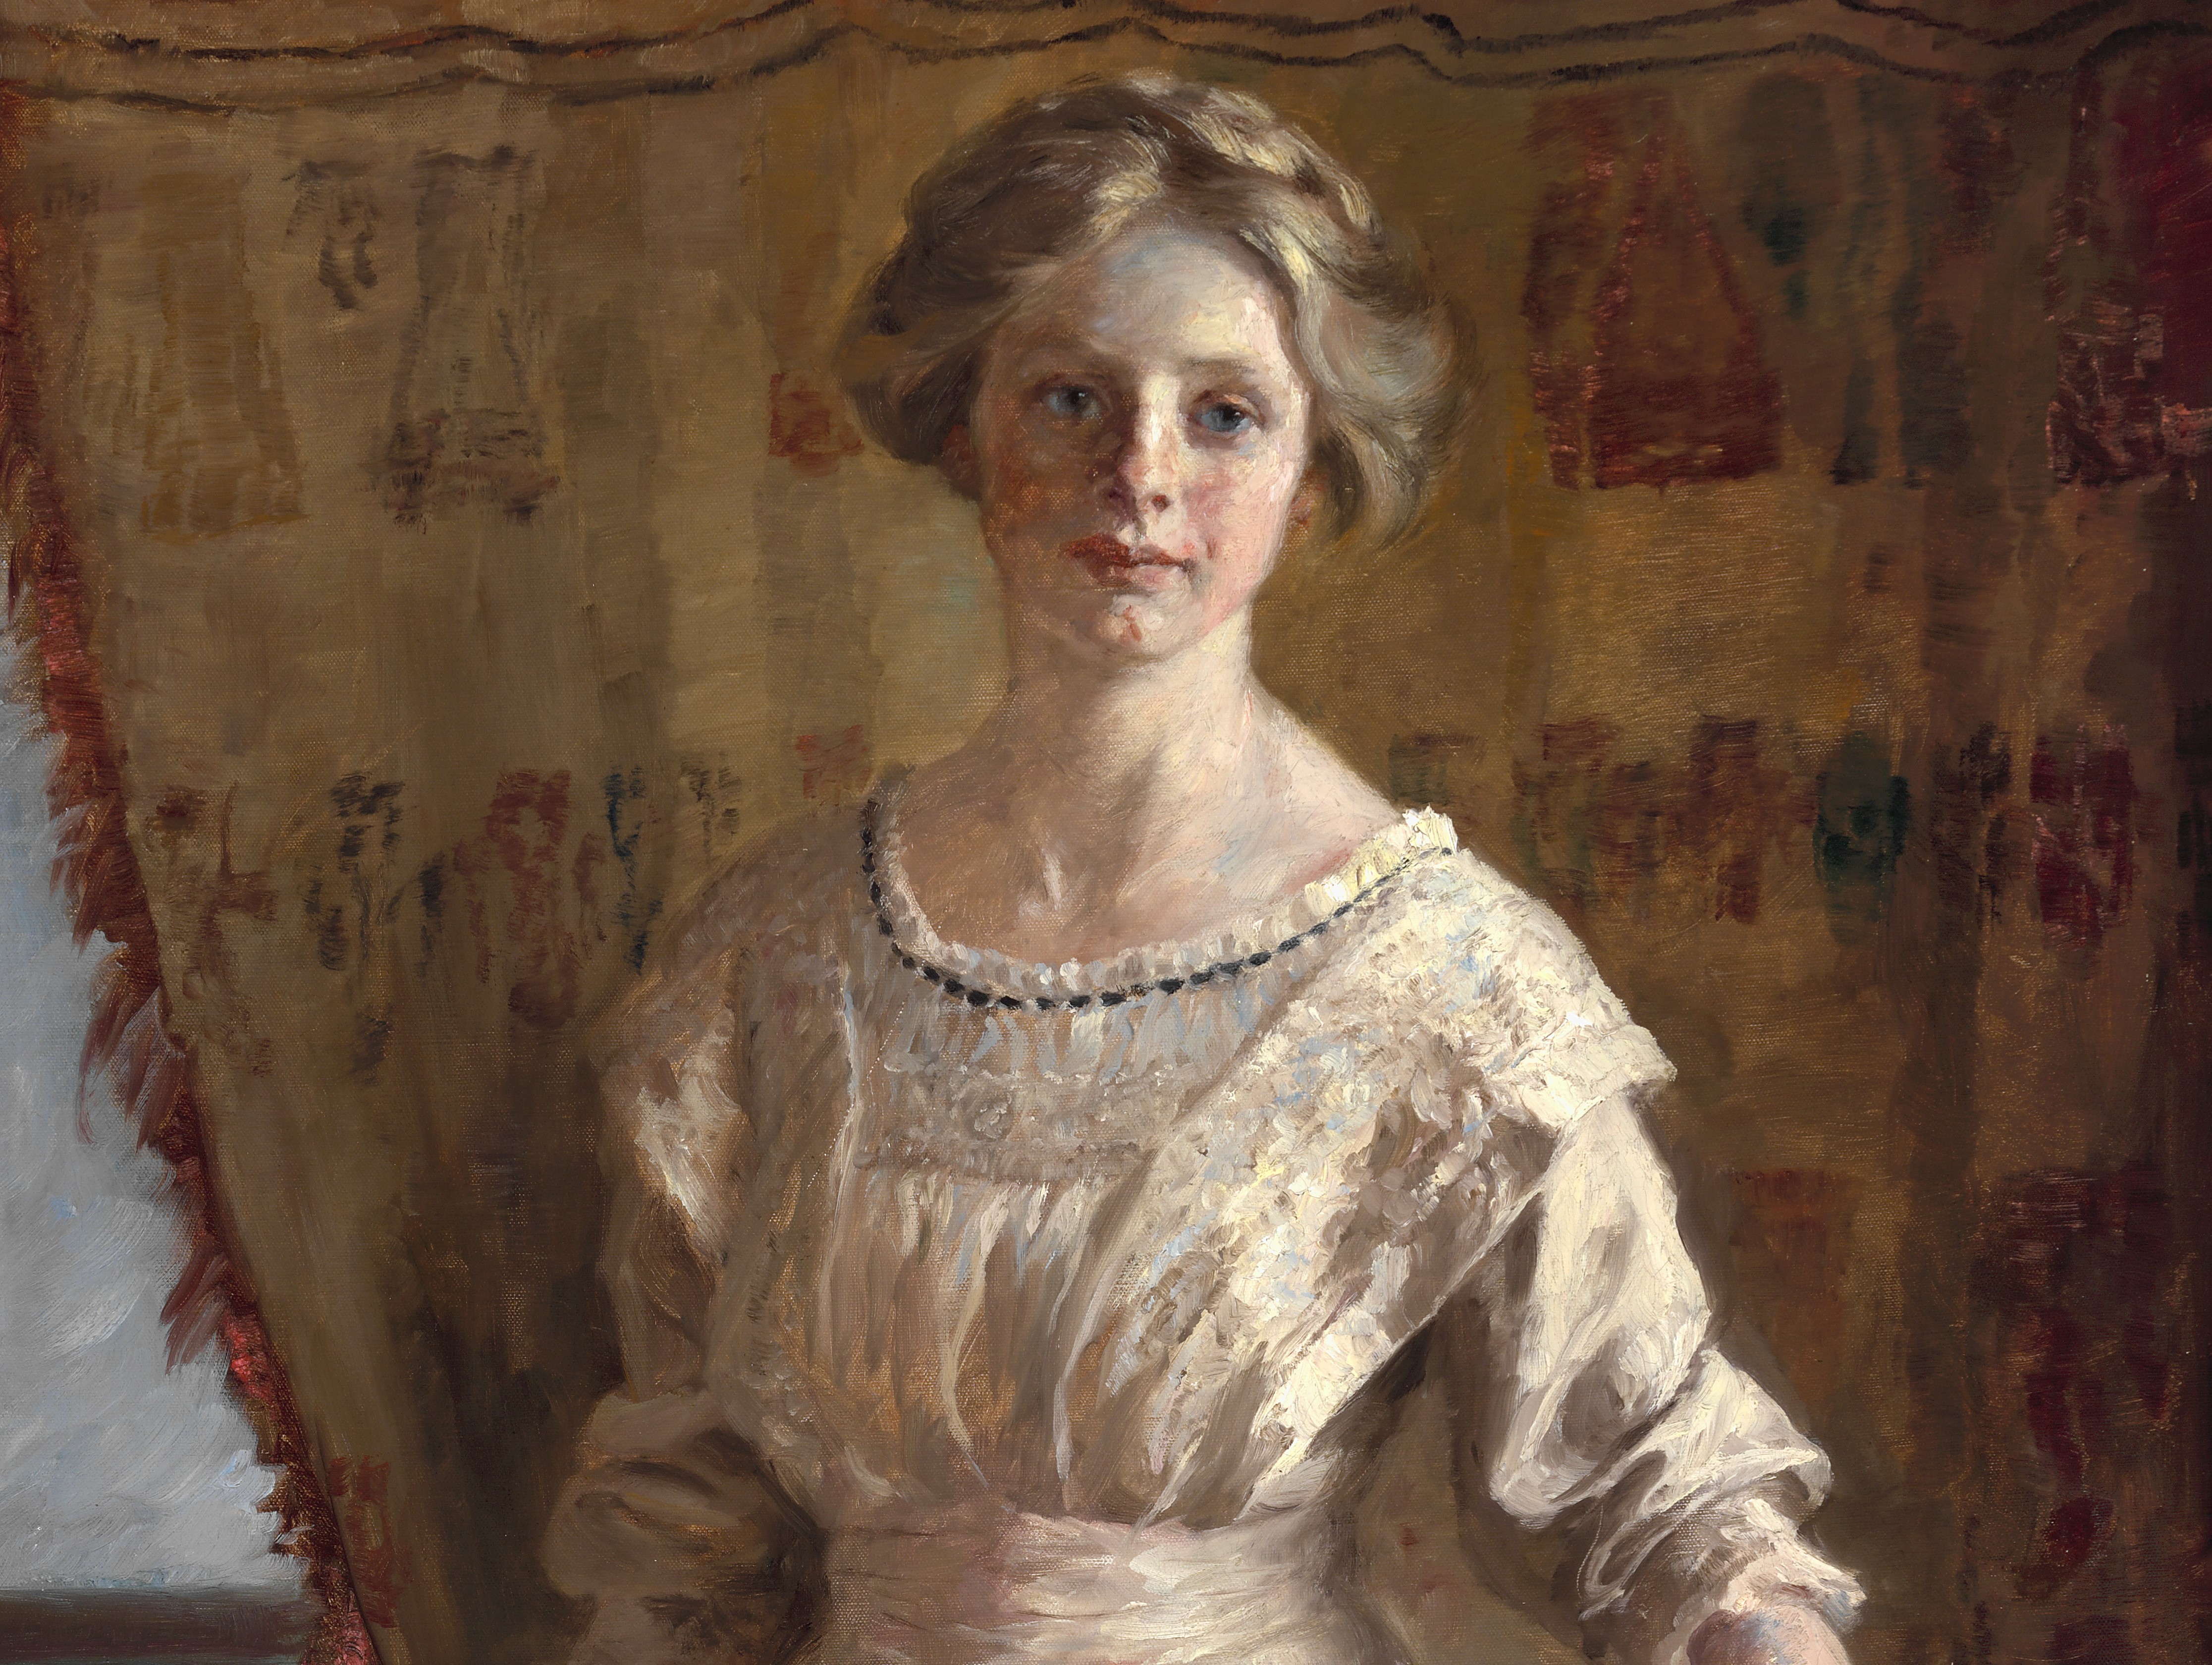 NYHED: Breve af P.S. Krøyers datter beskriver sidste portræt